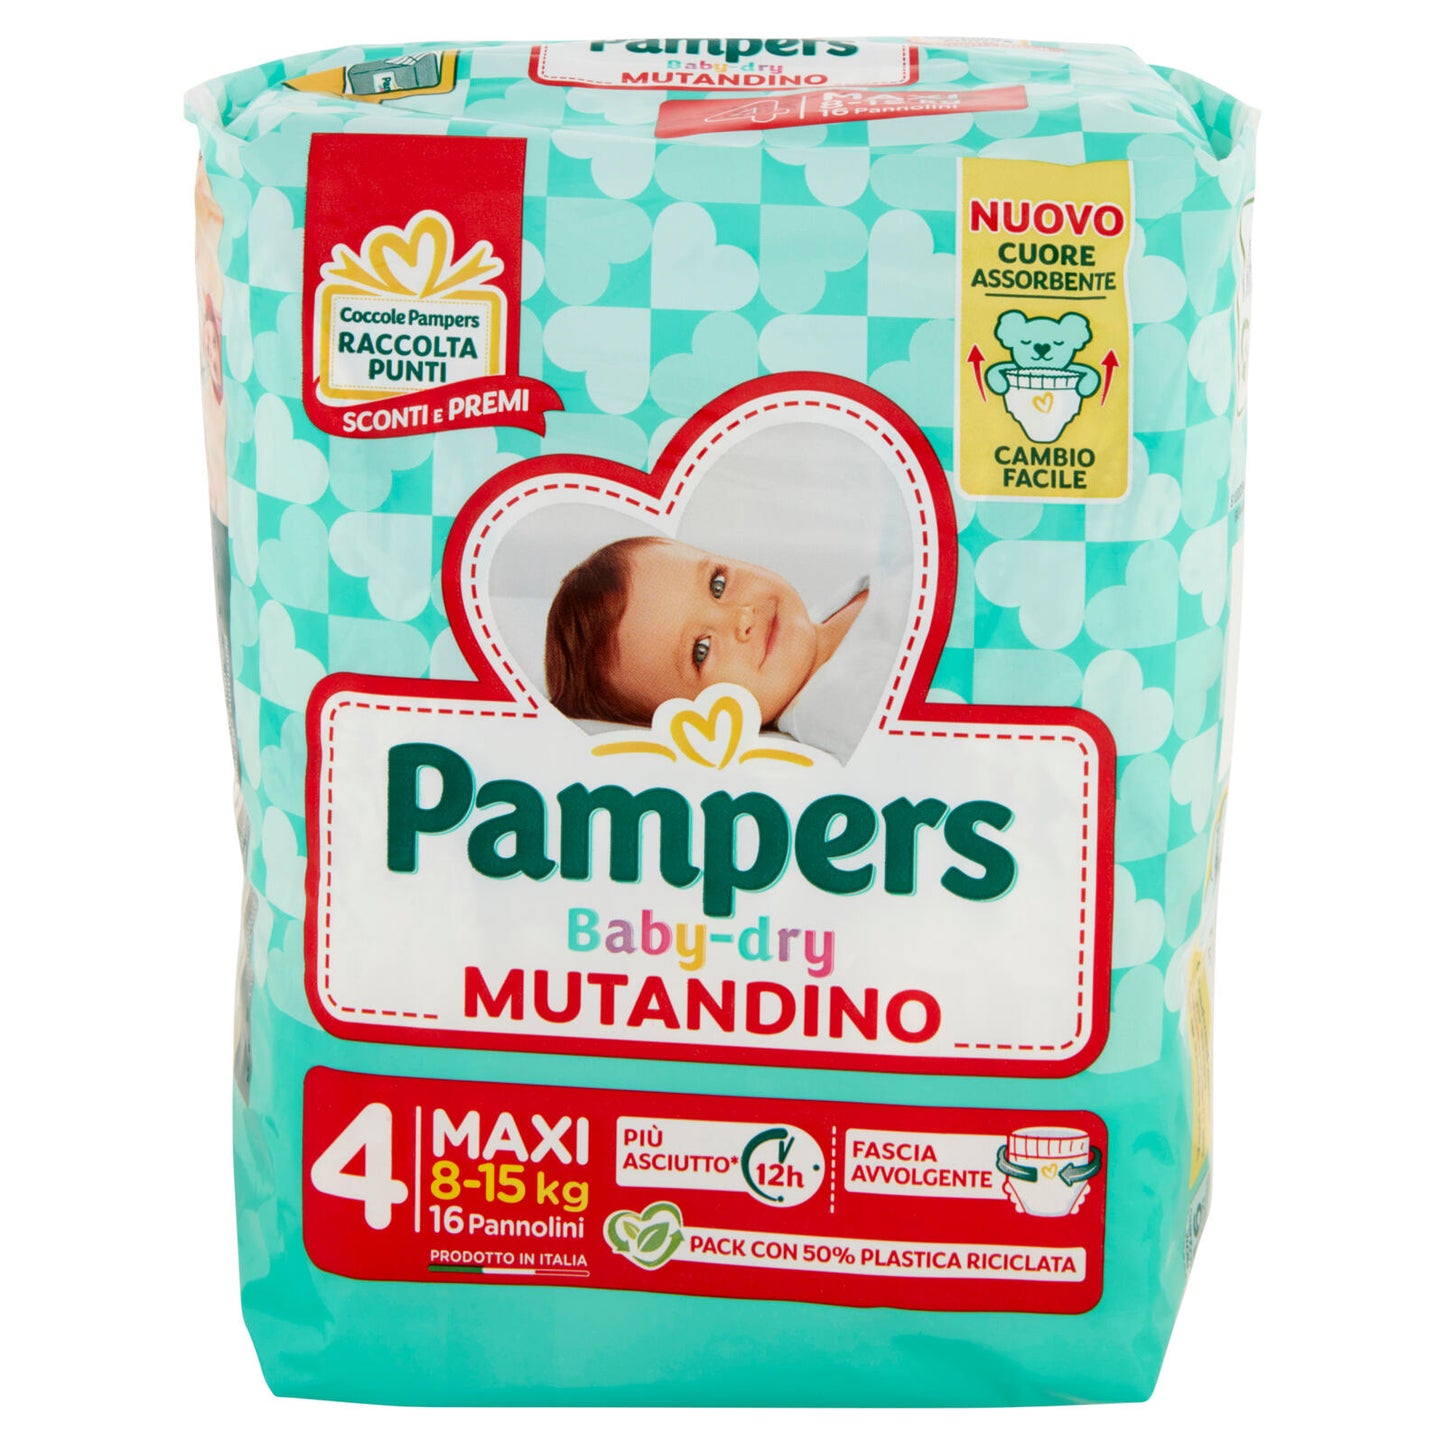 Pampers Baby-dry Mutandino Maxi 16 pz